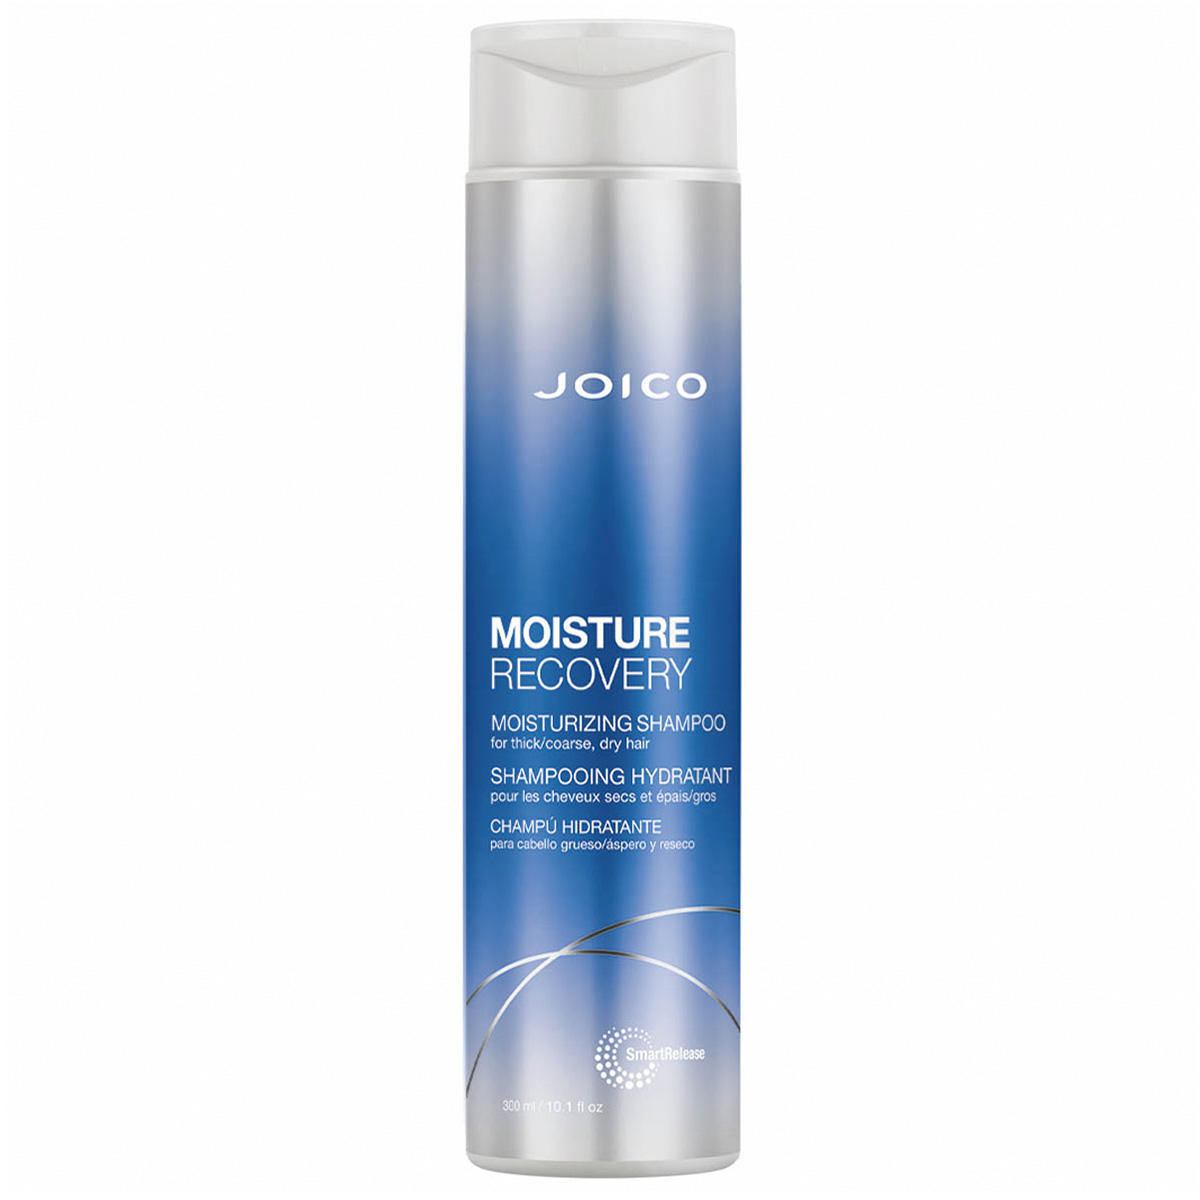 JOICO MOISTURE RECOVERY Moisturizing Shampoo  - 1